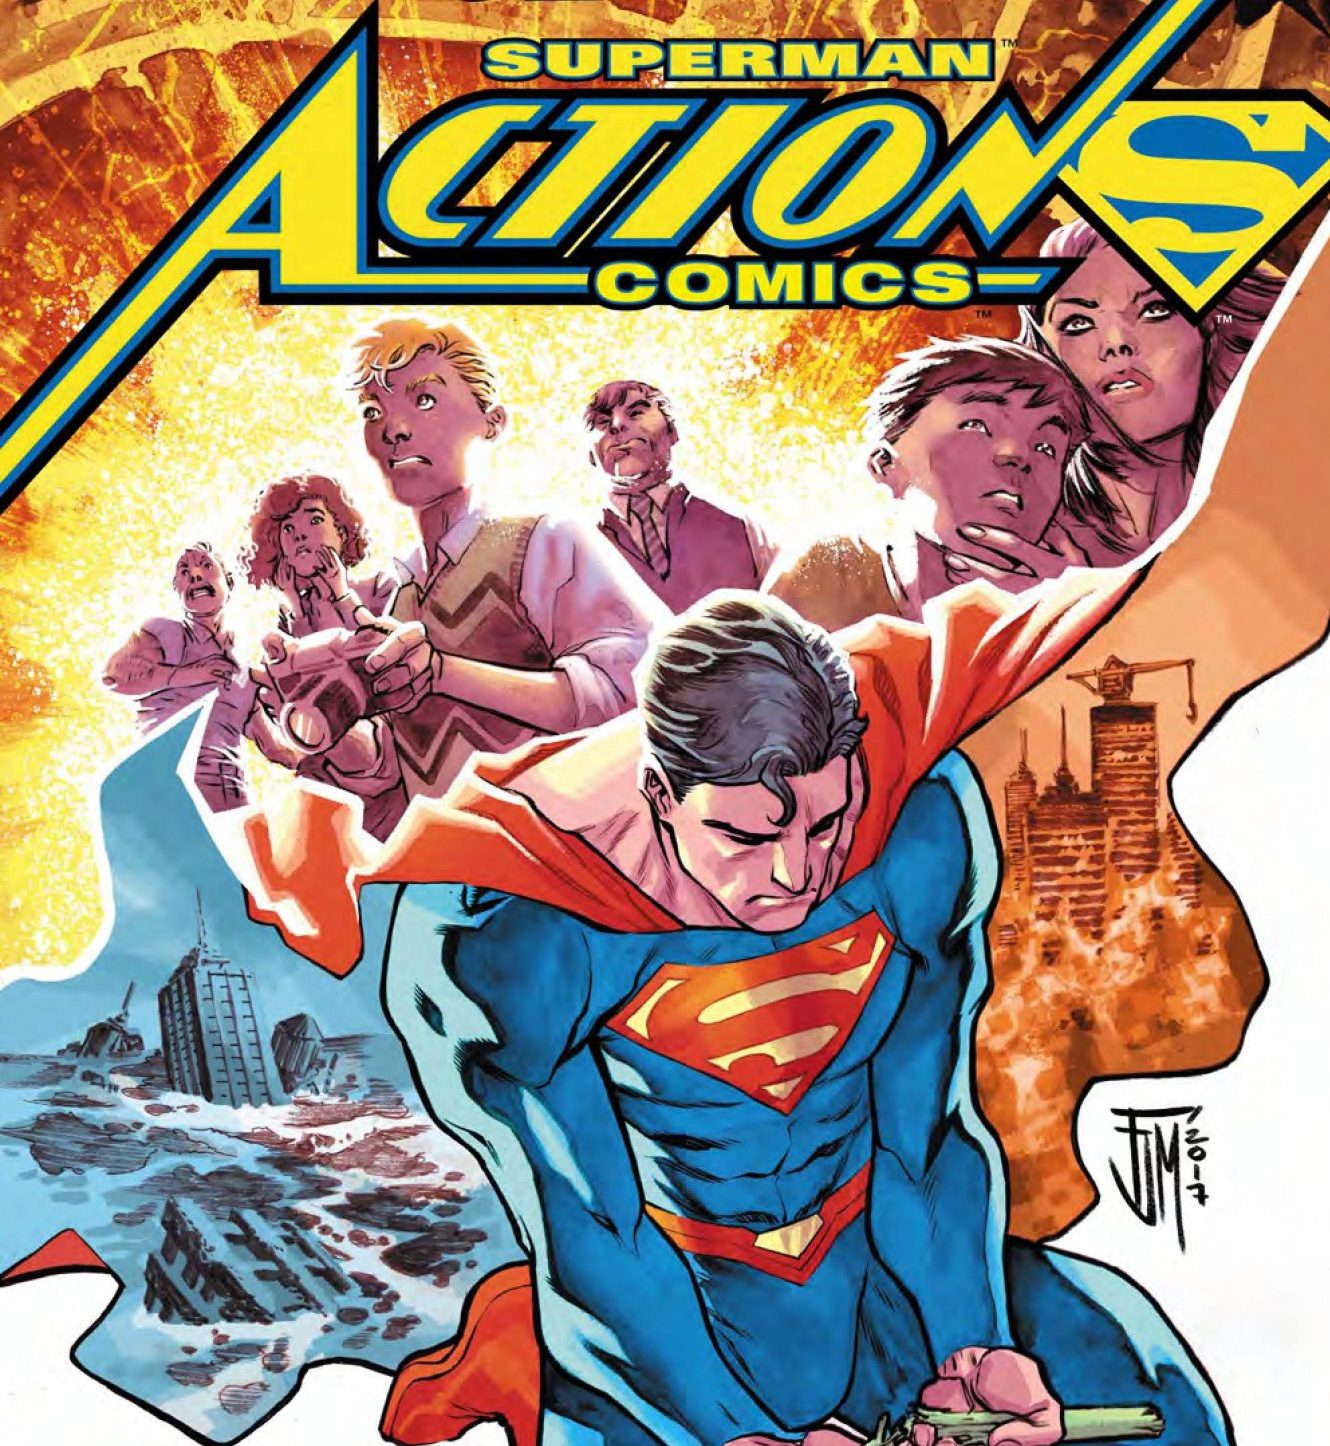 Action Comics #992 Review